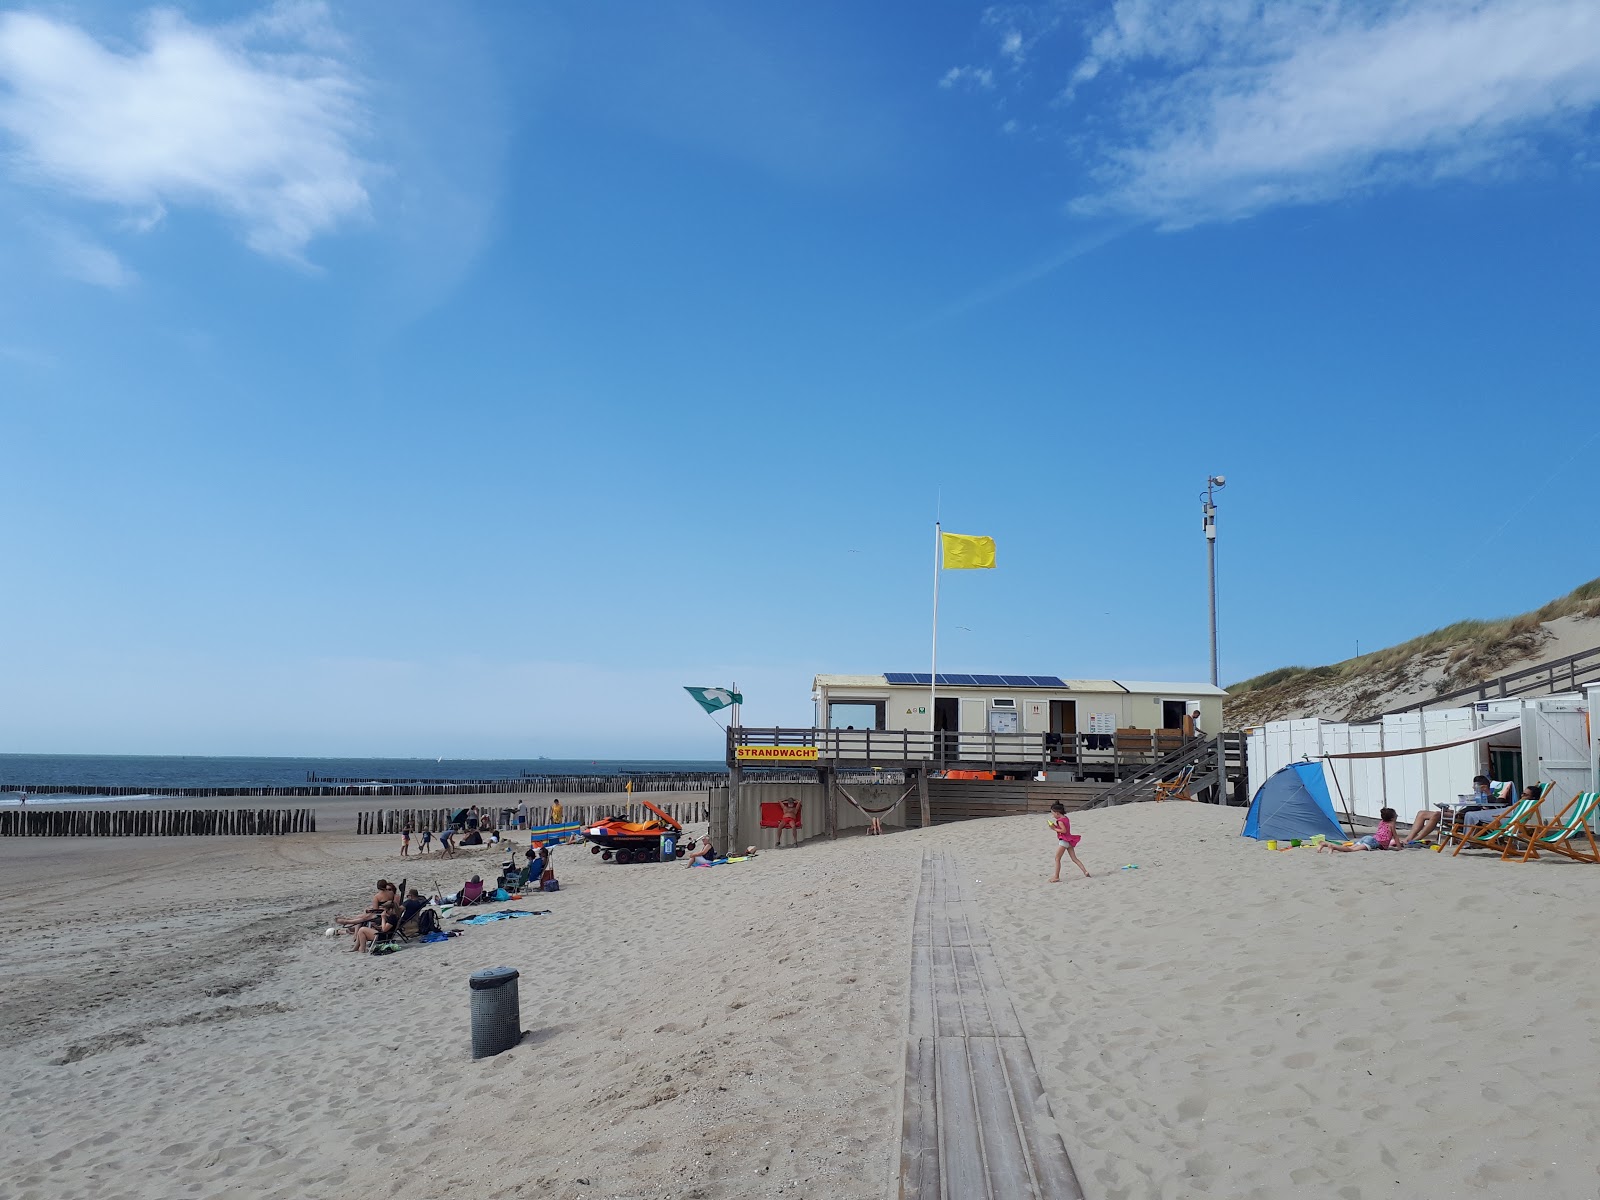 Fotografie cu Joossesweg beach - locul popular printre cunoscătorii de relaxare